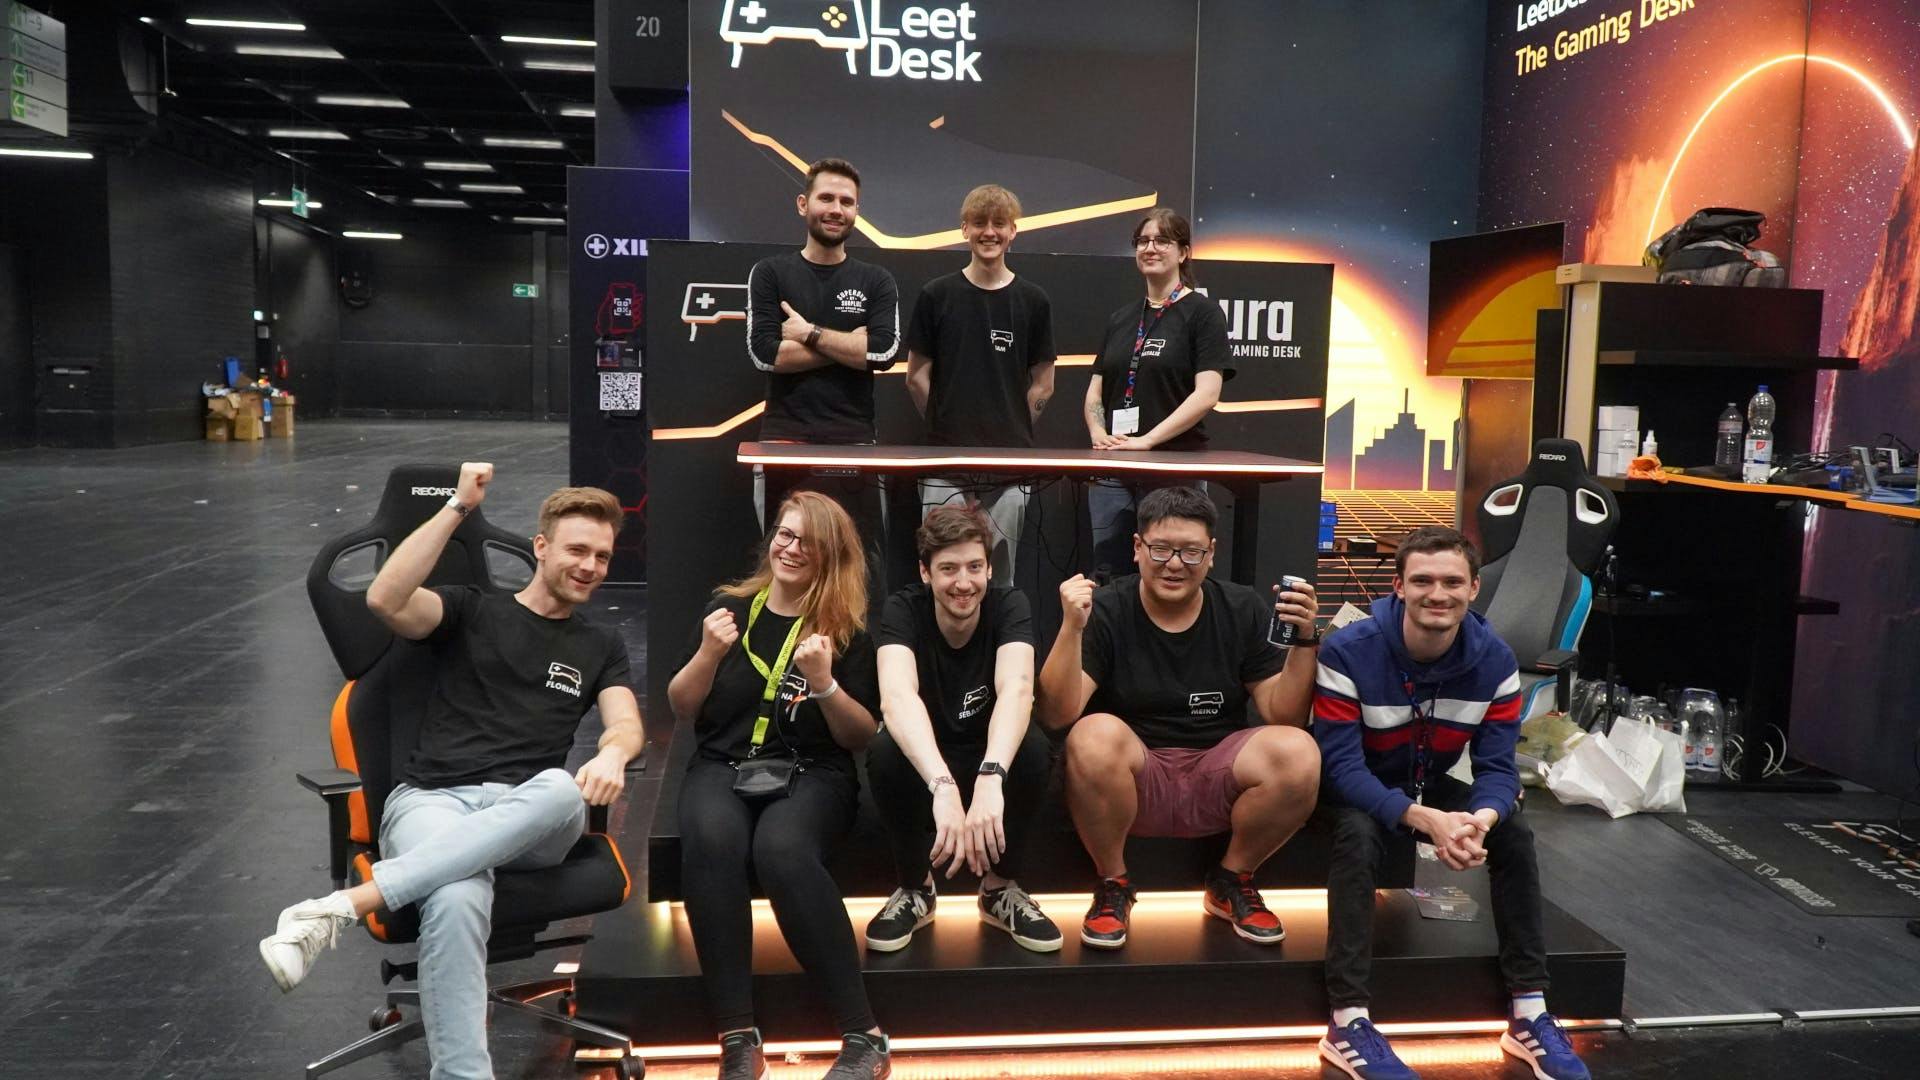 Das LeetDesk Team sitzt auf ihrer Gamescom Bühne rund um dem AURA LED Gaming Tisch und lacht in die Kamera